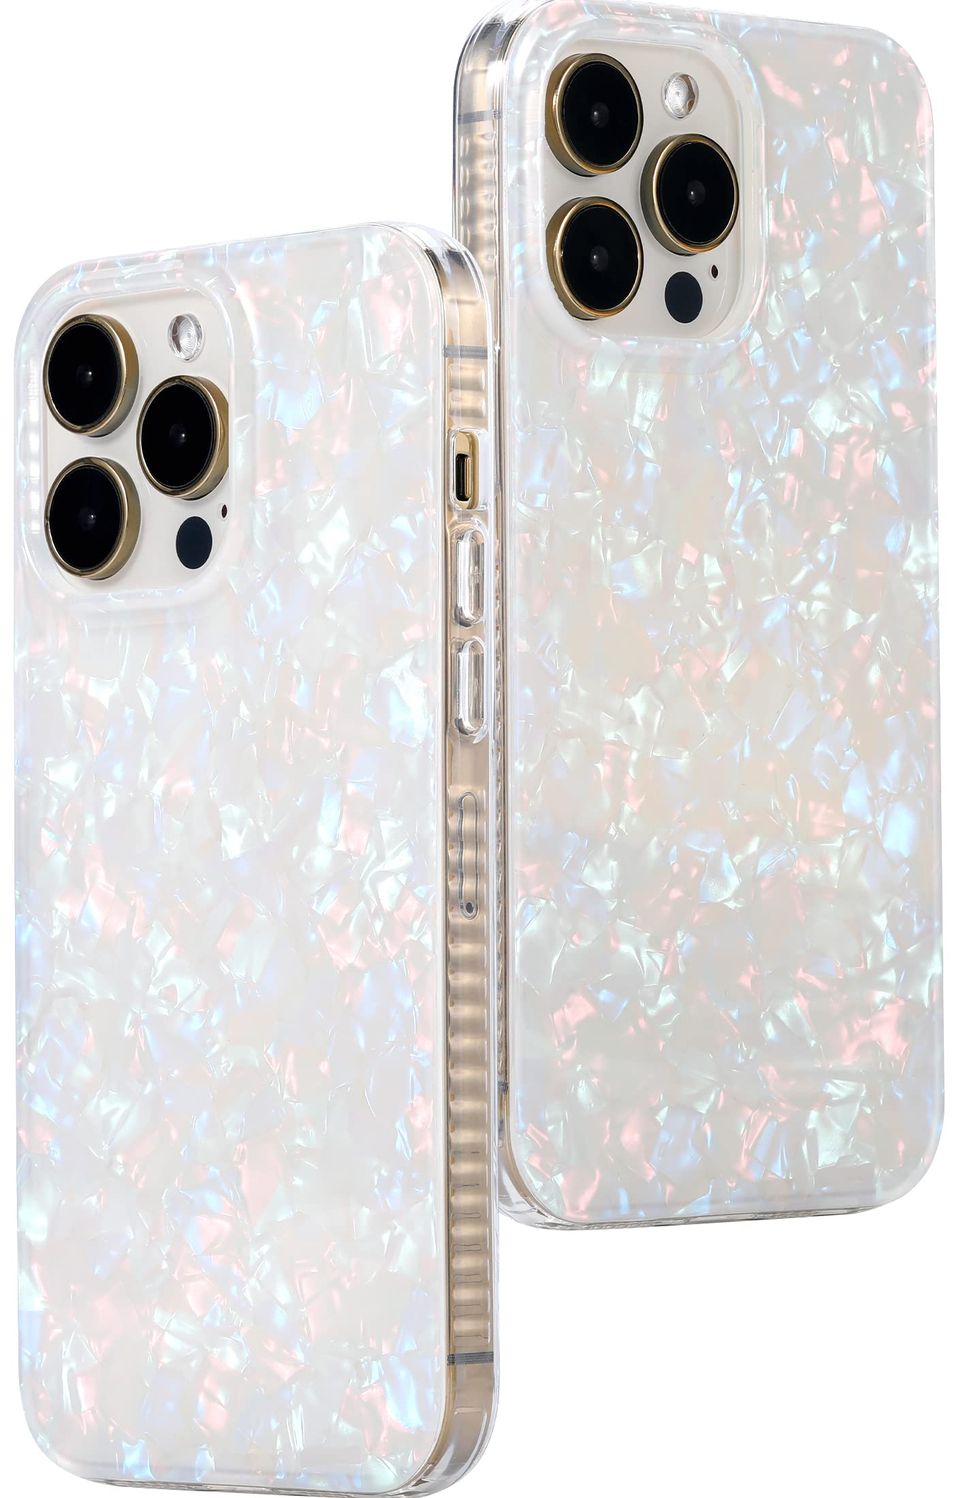 Translucent Pearl Tort Phone Case